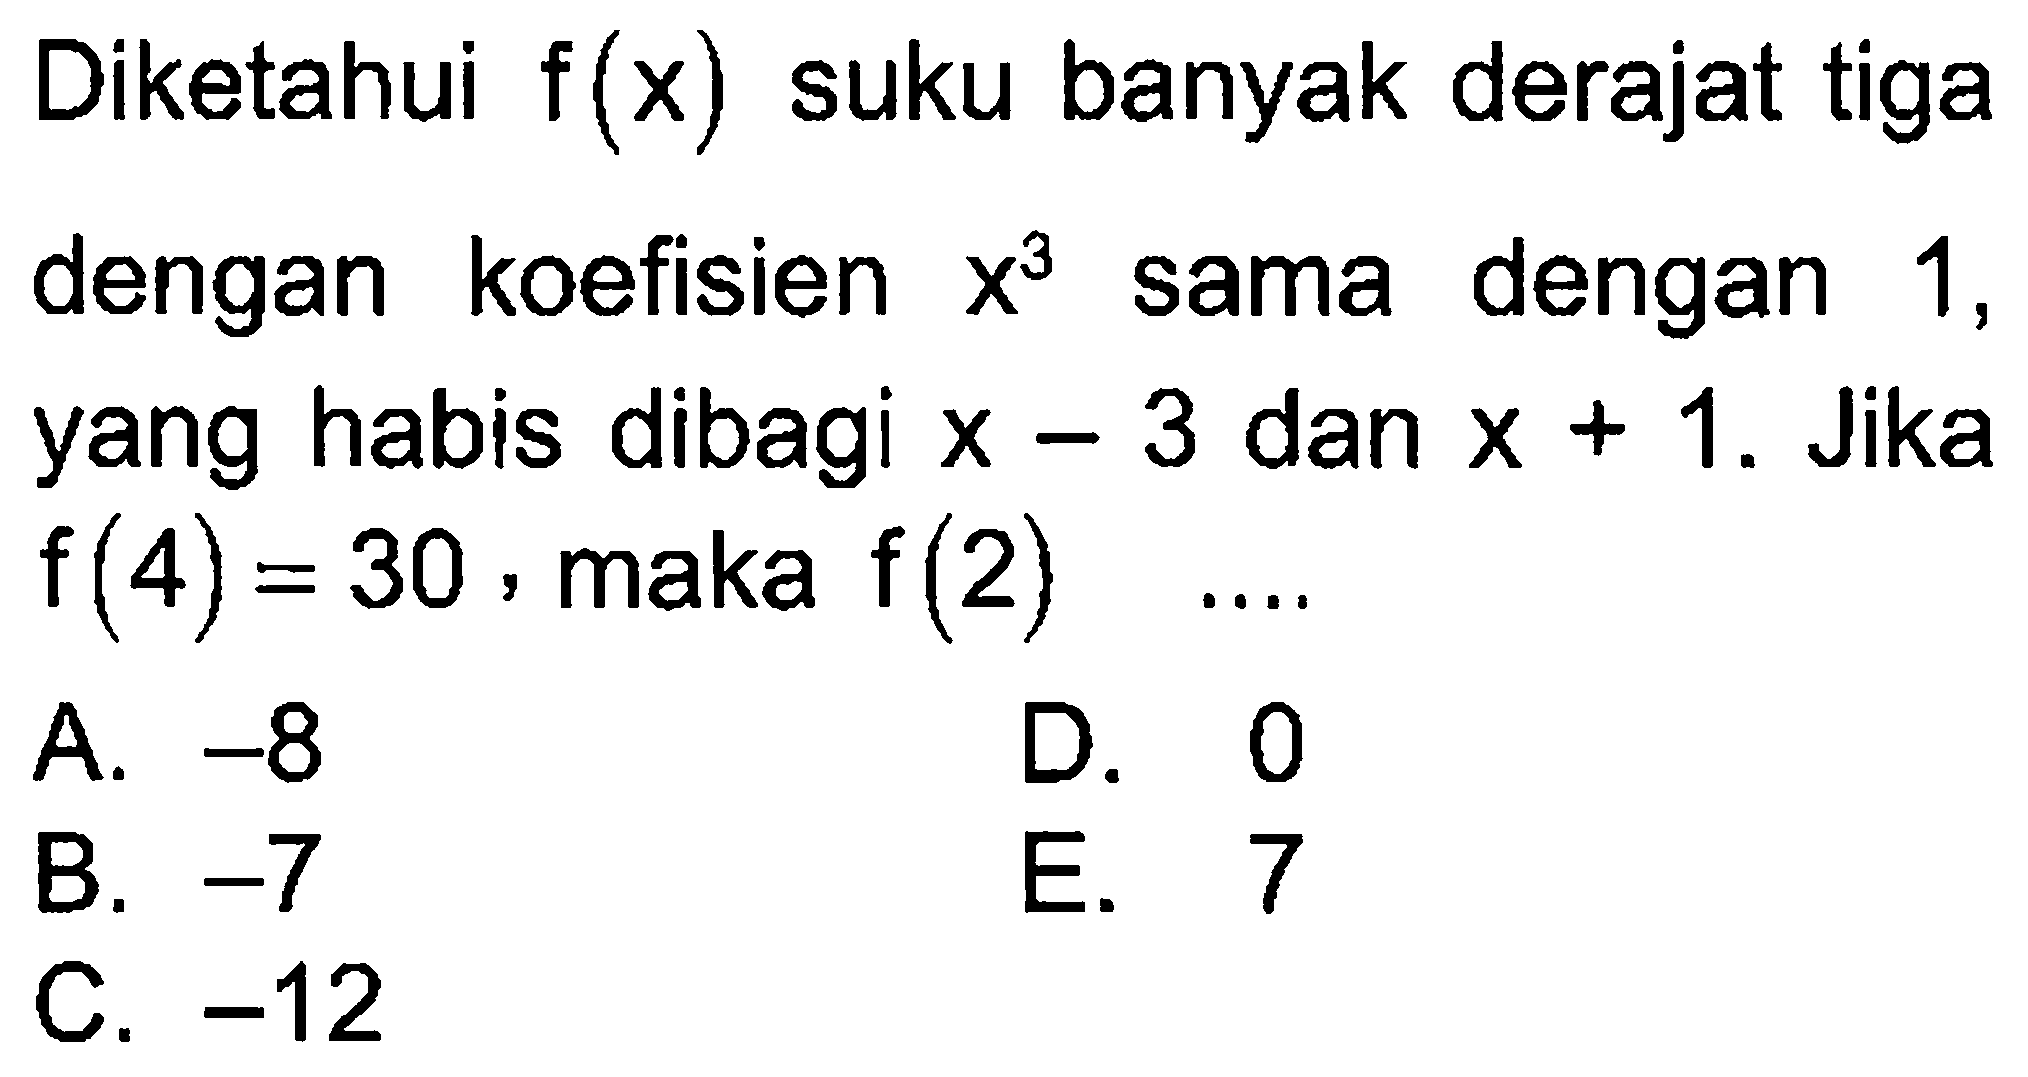 Diketahui f(x) suku banyak derajat tiga dengan koefisien x^3 sama dengan 1, yang habis dibagi x-3 dan x+1. Jika f(4)=30, maka f(2) ...